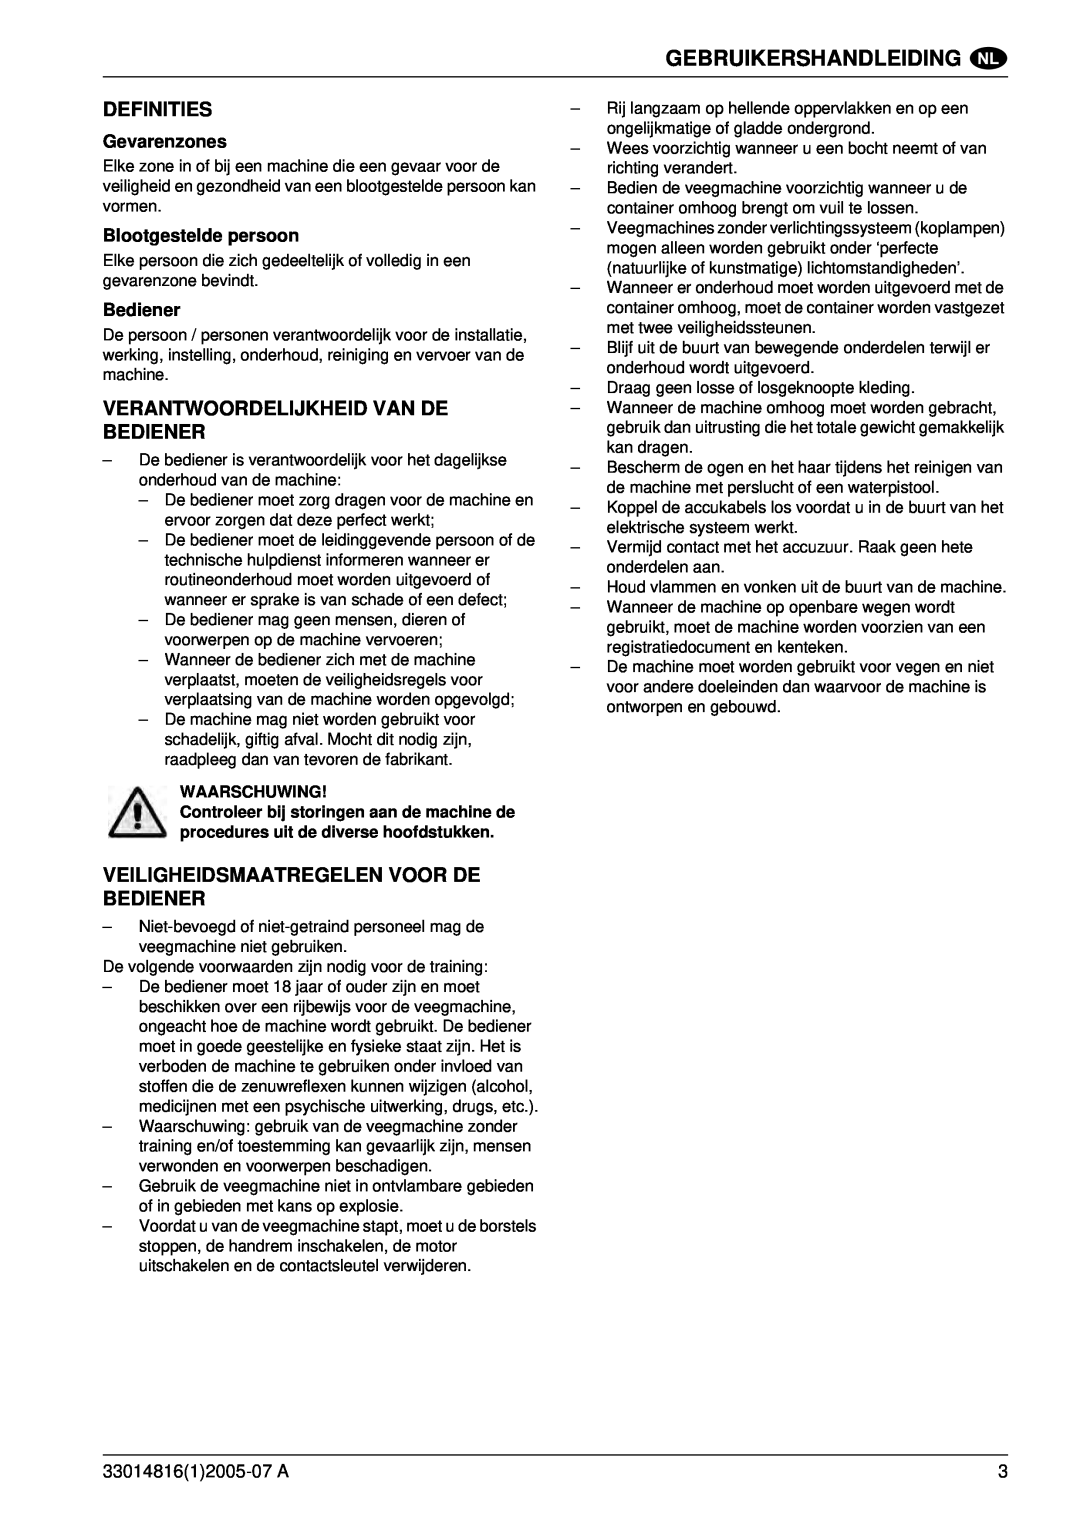 Nilfisk-ALTO SR 1700 2WD B Definities, Verantwoordelijkheid Van De Bediener, Veiligheidsmaatregelen Voor De Bediener 